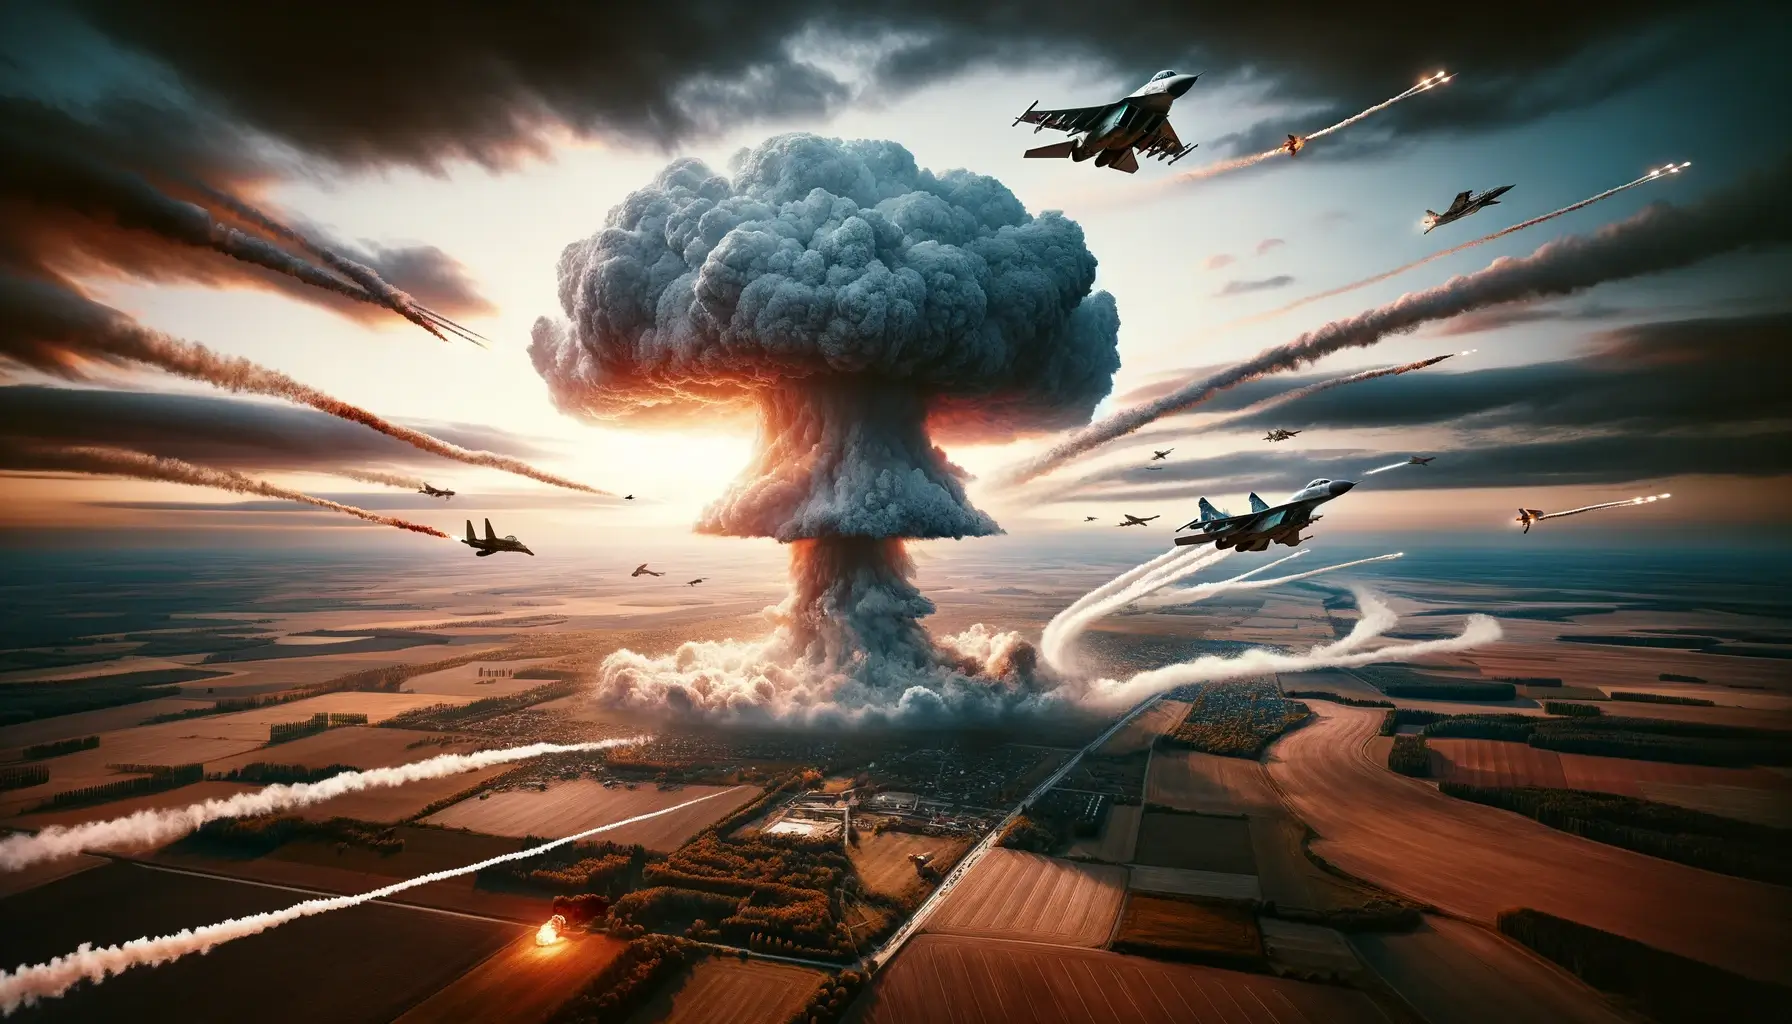 Der dritte Weltkrieg, Illustration aus Sicht von künstlicher Intelligenz